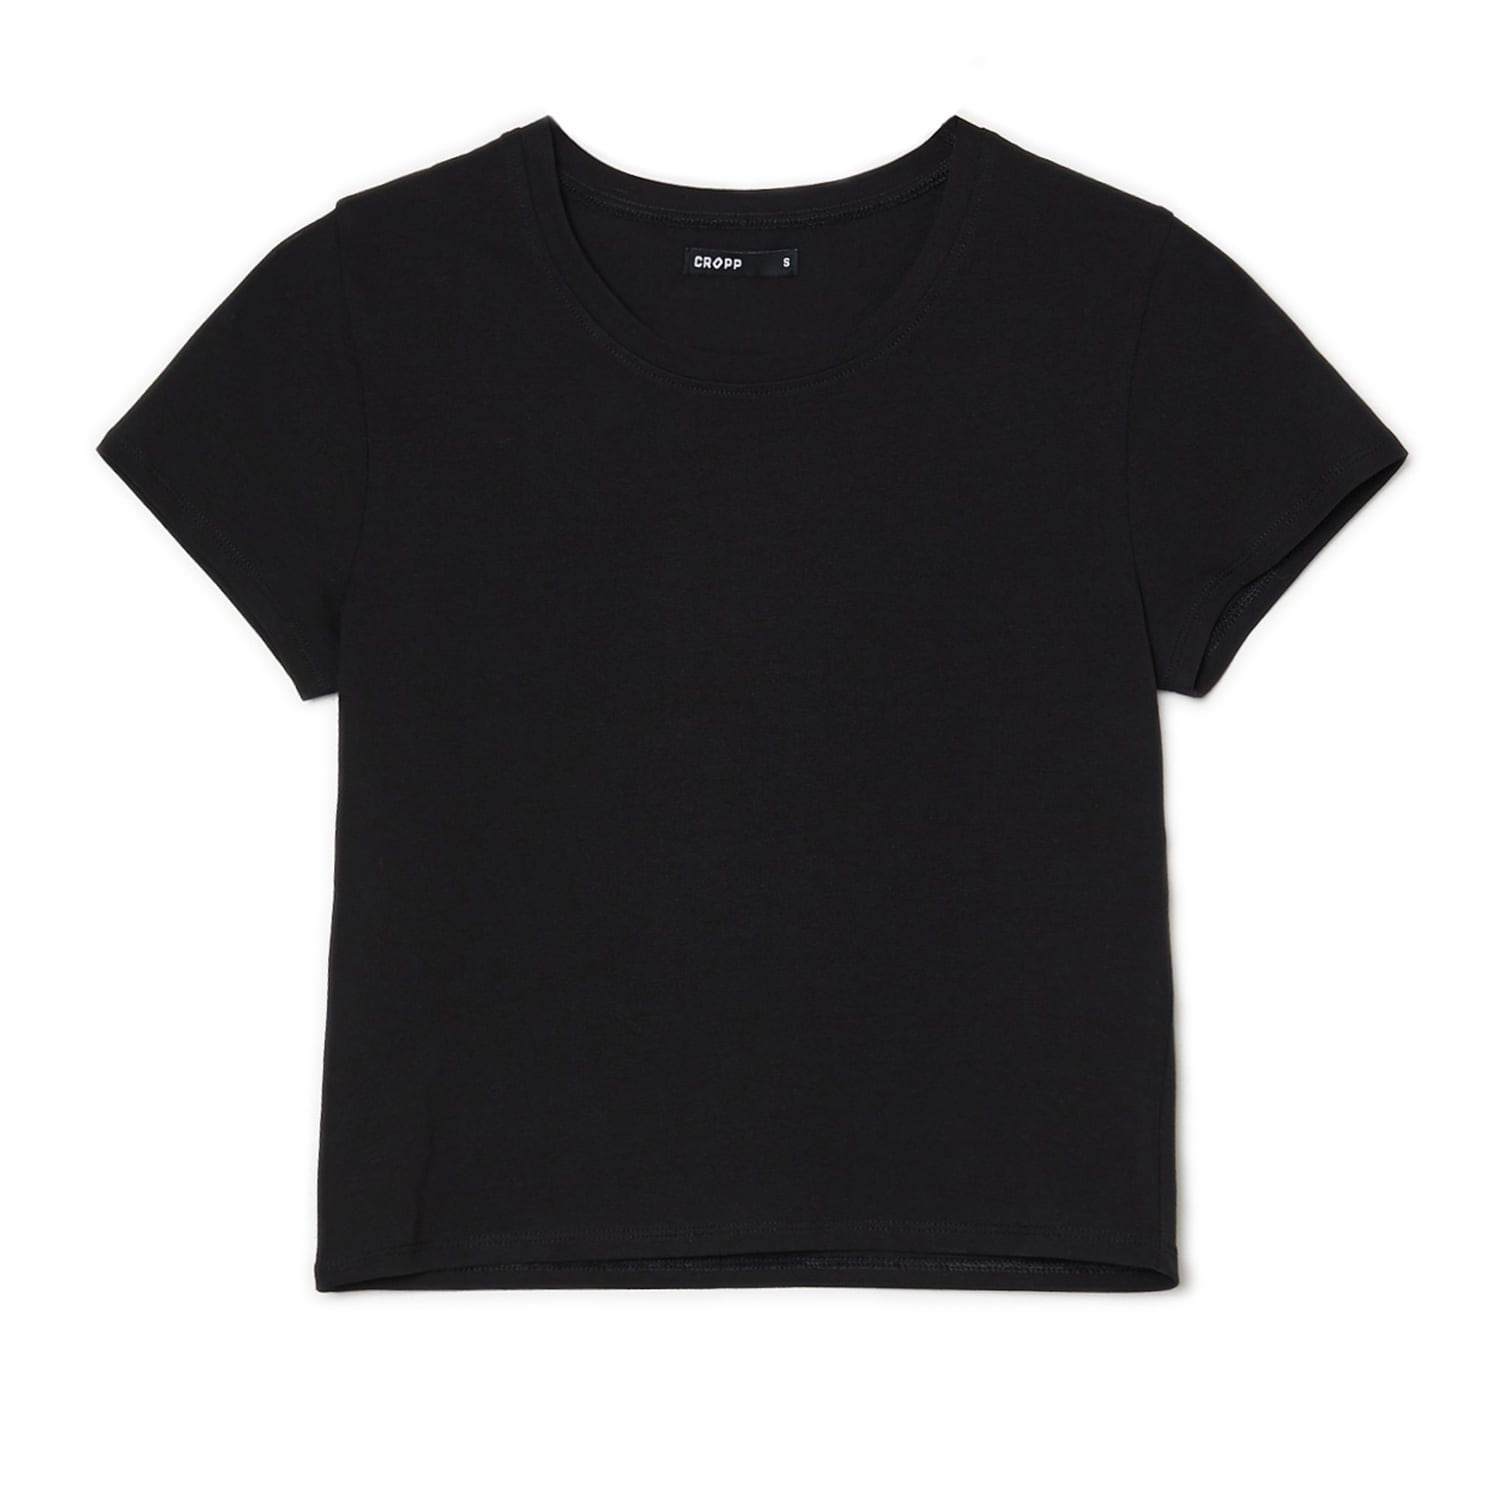 Cropp - Gładka czarna koszulka - Czarny